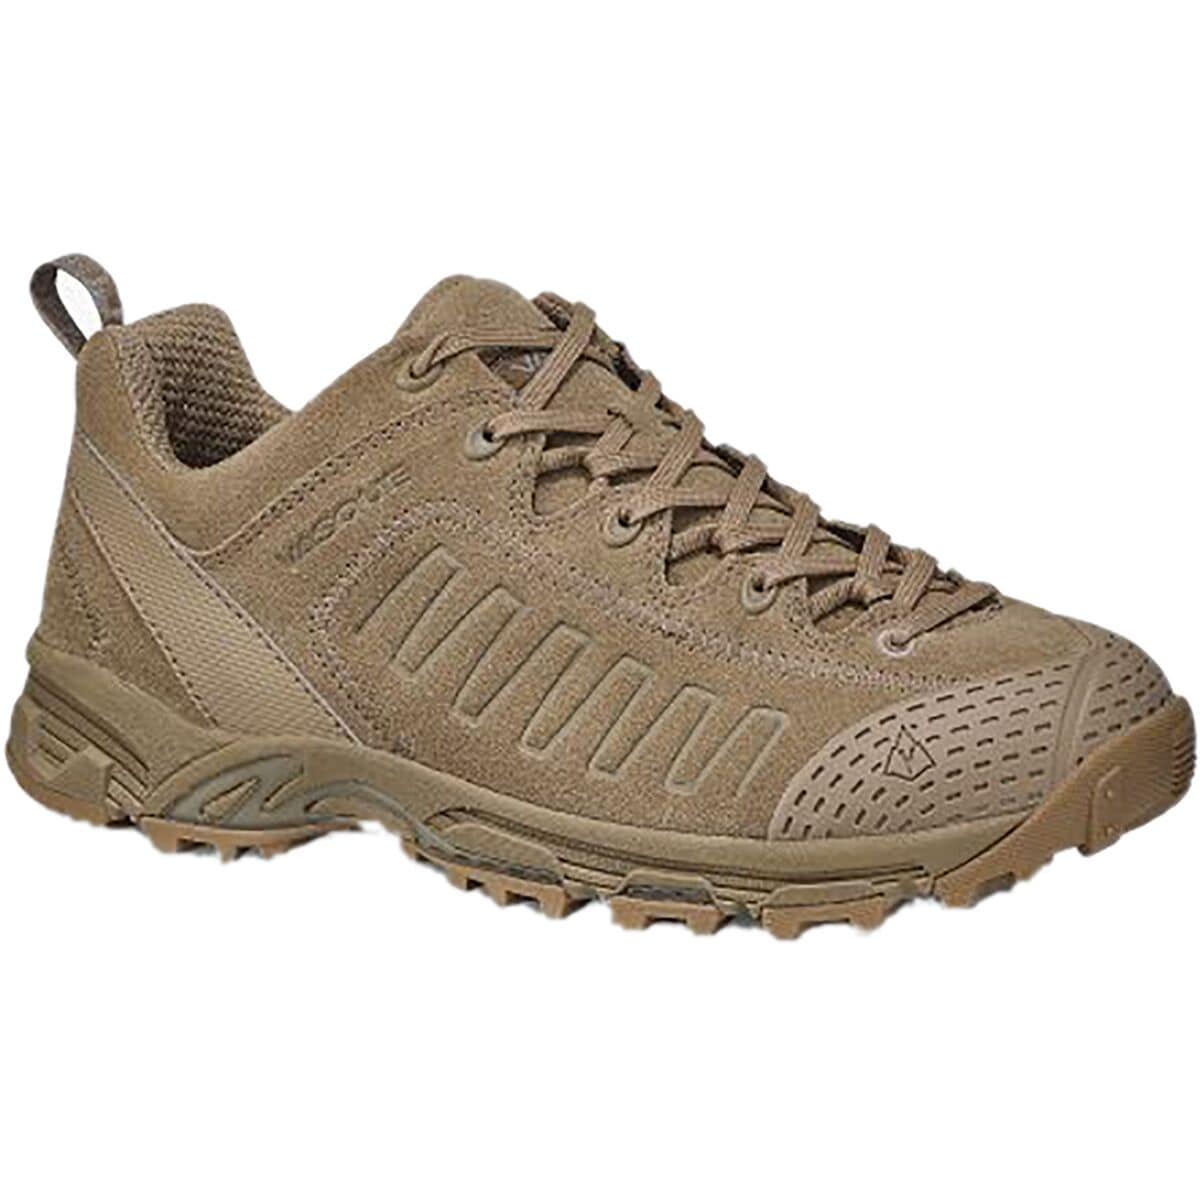 Vasque Juxt Hiking Shoe - Men's 